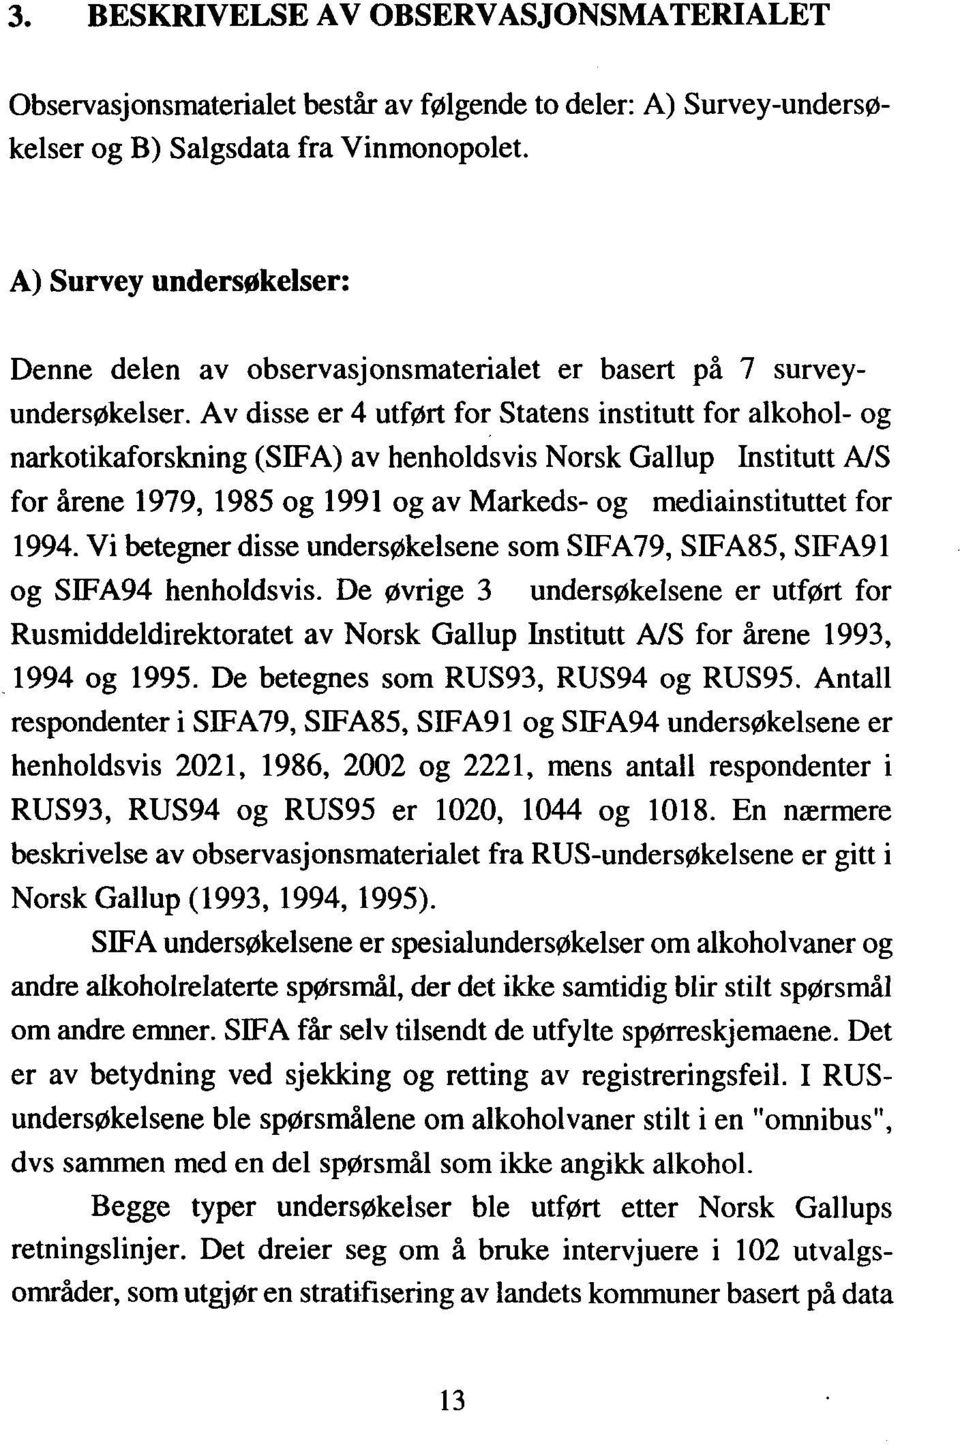 Av disse er 4 utført for Statens institutt for alkohol- og narkotikaforskning (SIFA) av henholdsvis Norsk Gallup Institutt A/S for årene 1979, 1985 og 1991 og av Markeds- og mediainstituttet for 1994.